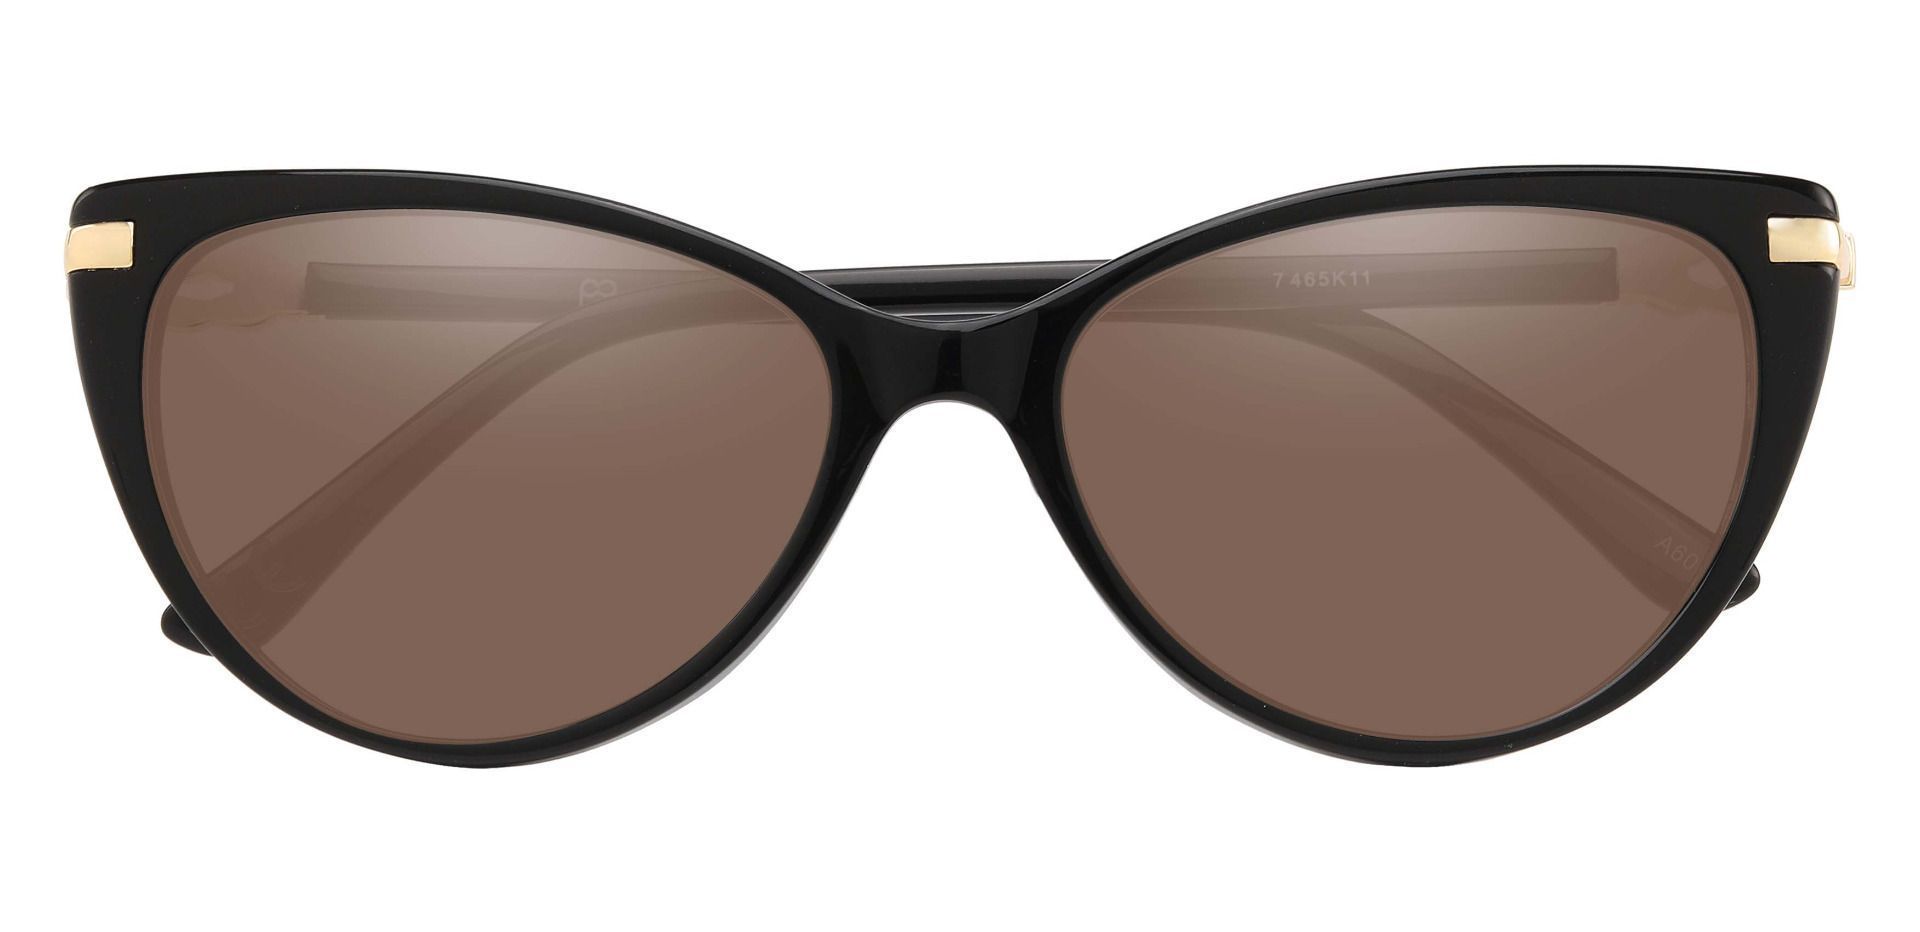 Starla Cat Eye Prescription Sunglasses - Black Frame With Brown Lenses